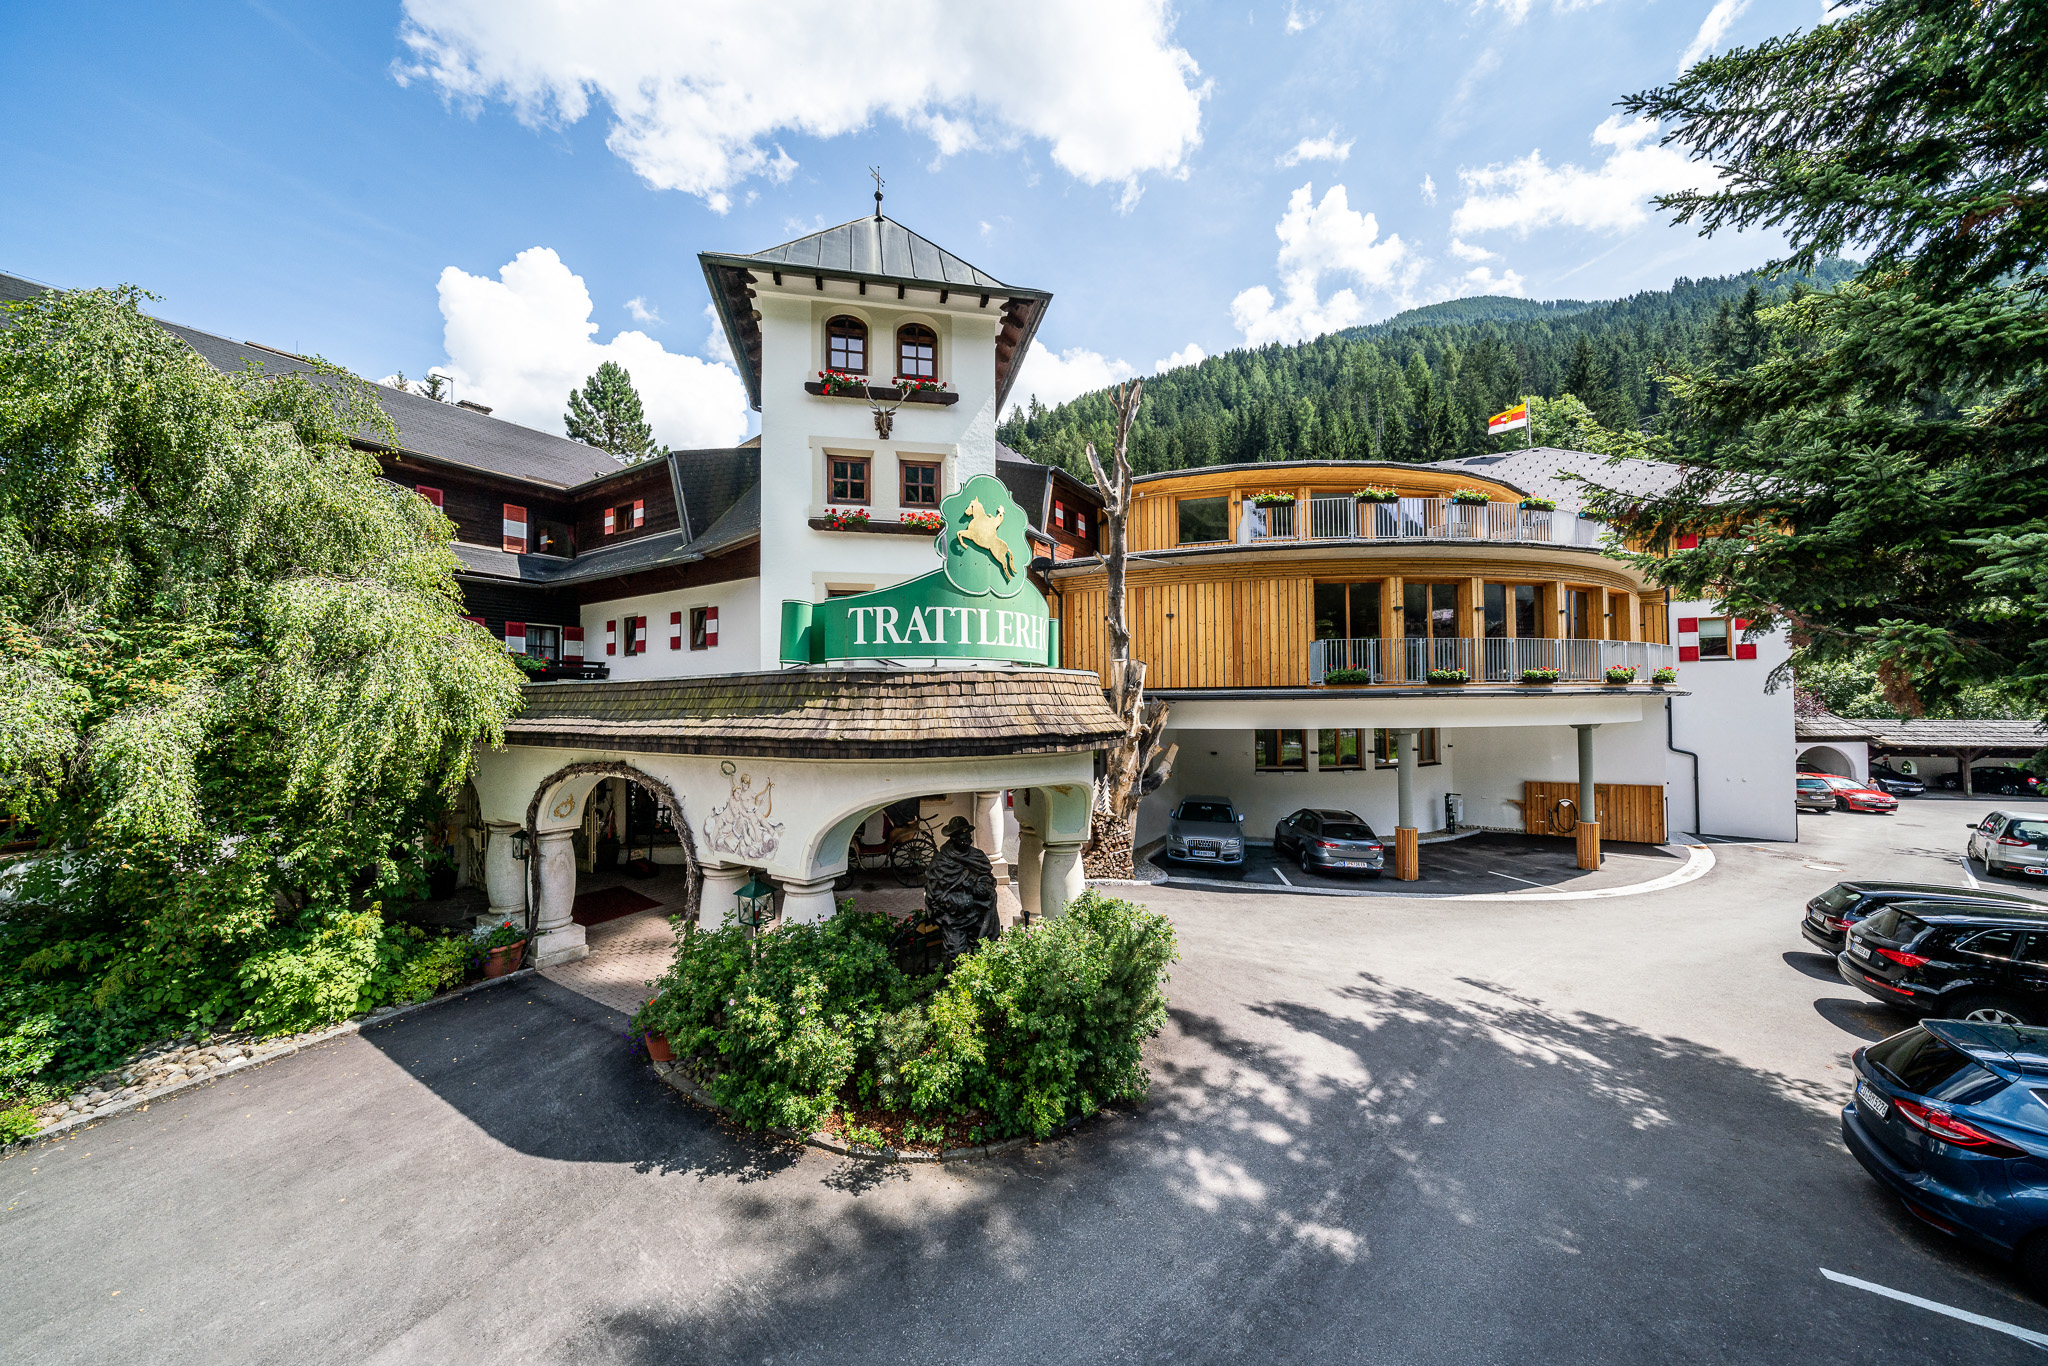 Hotel GUT Trattlerhof**** - Der wahrscheinlich charmanteste GUTshof im Süden Österreichs!